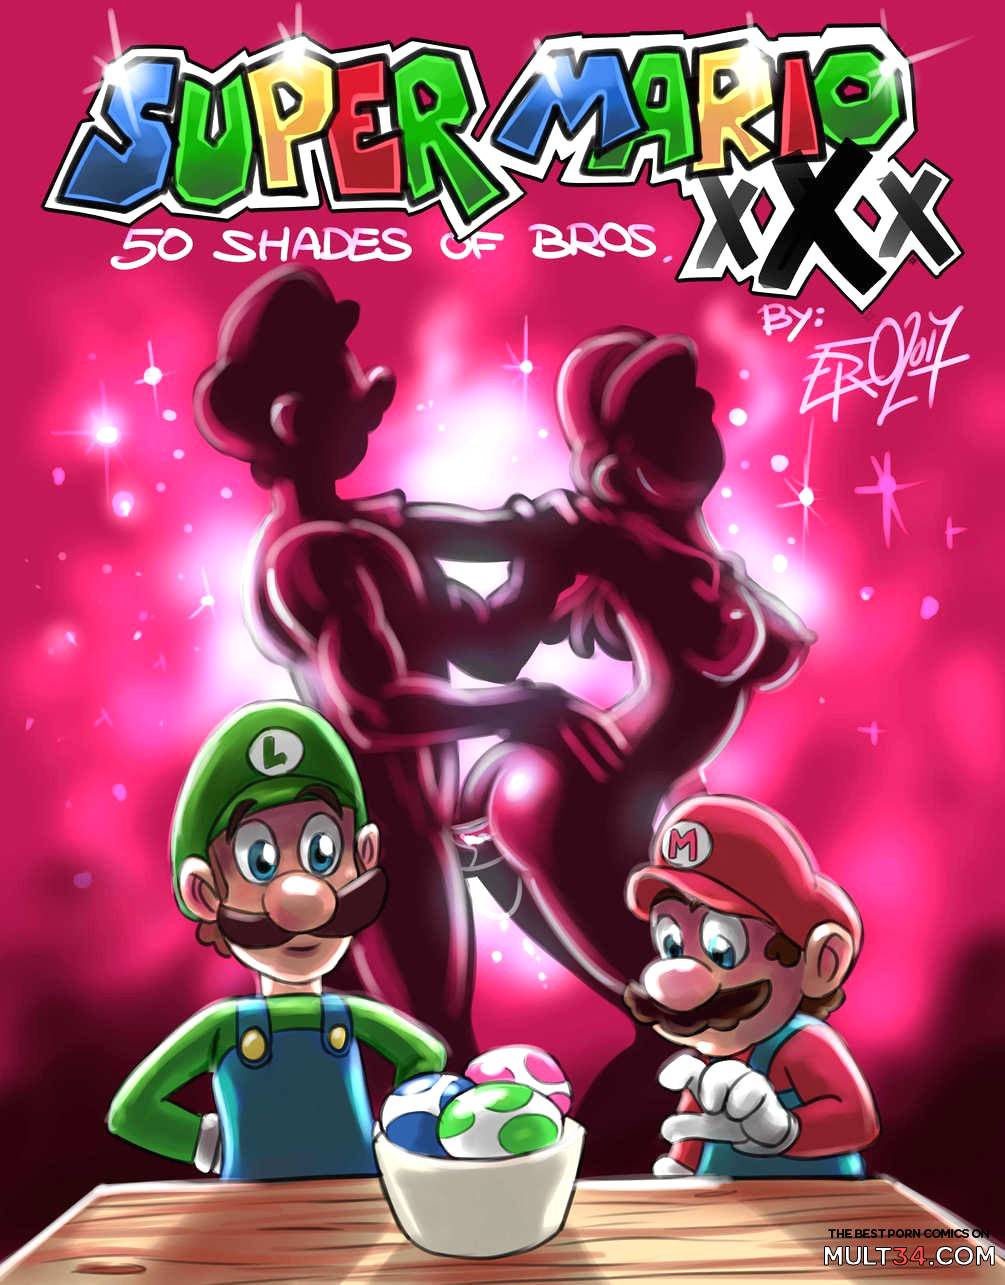 Mario Lesbian Sex - Super Mario - 50 Shades of Bros porn comic - the best cartoon porn comics,  Rule 34 | MULT34